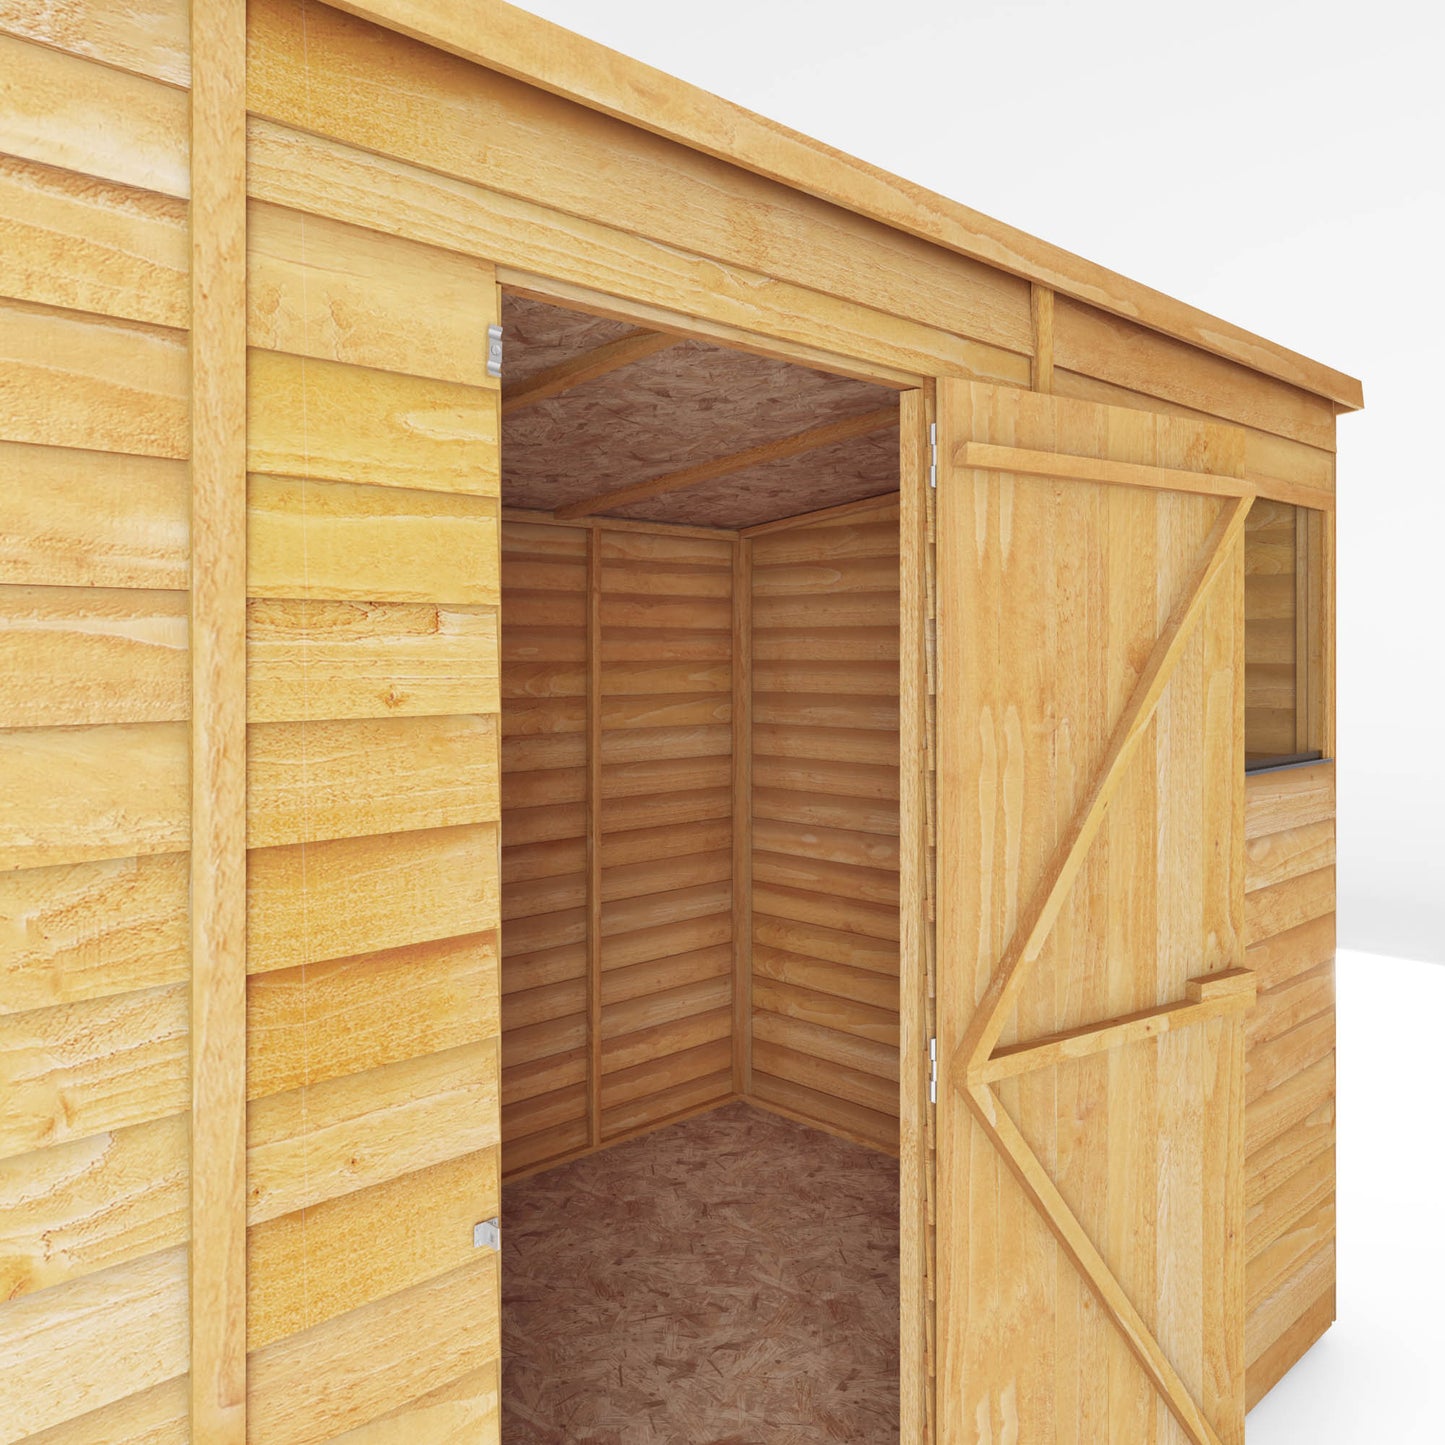 10 x 6 Overlap Single Door Pent Wooden Shed